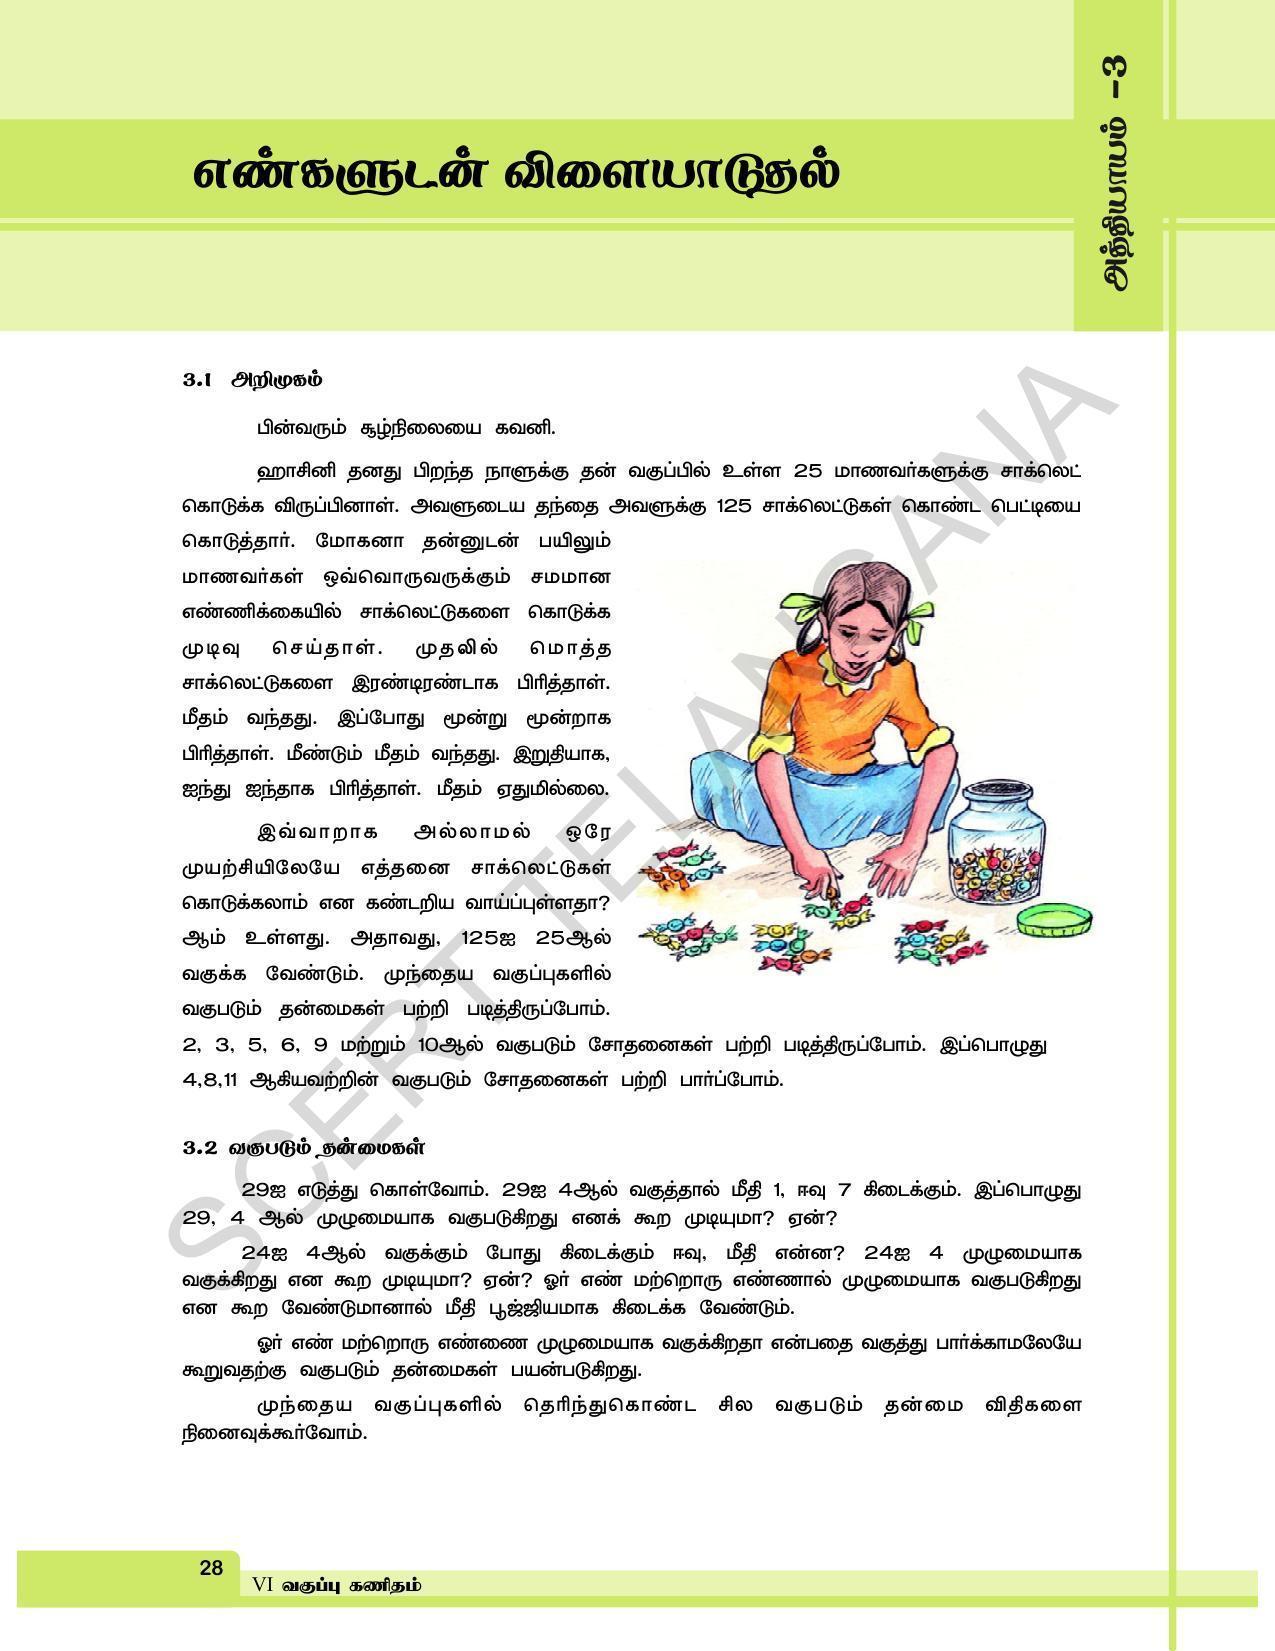 TS SCERT Class 6 Maths  (Tamil Medium) Text Book - Page 36